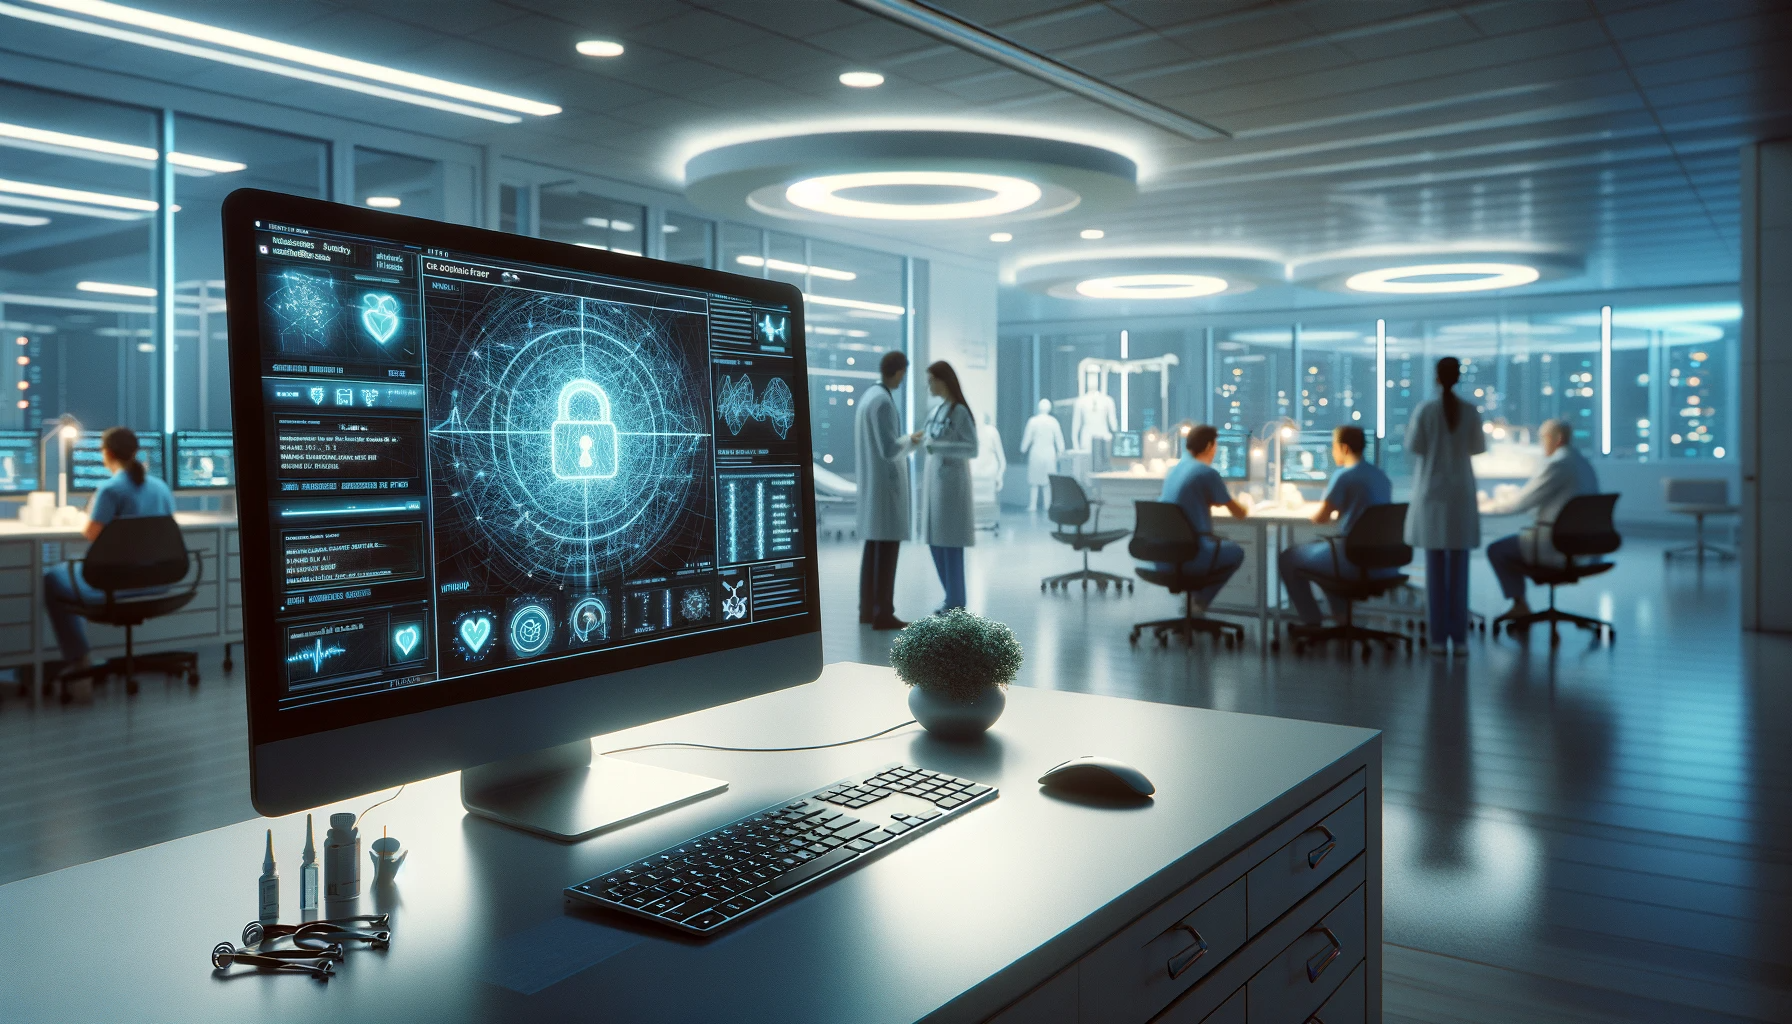 Przyszłościowy wygląd centrum monitoringu zdrowia z monitorem wyświetlającym interfejs bezpieczeństwa cyfrowego, w tle personel medyczny analizujący dane, również podatny na ataki ransomware.